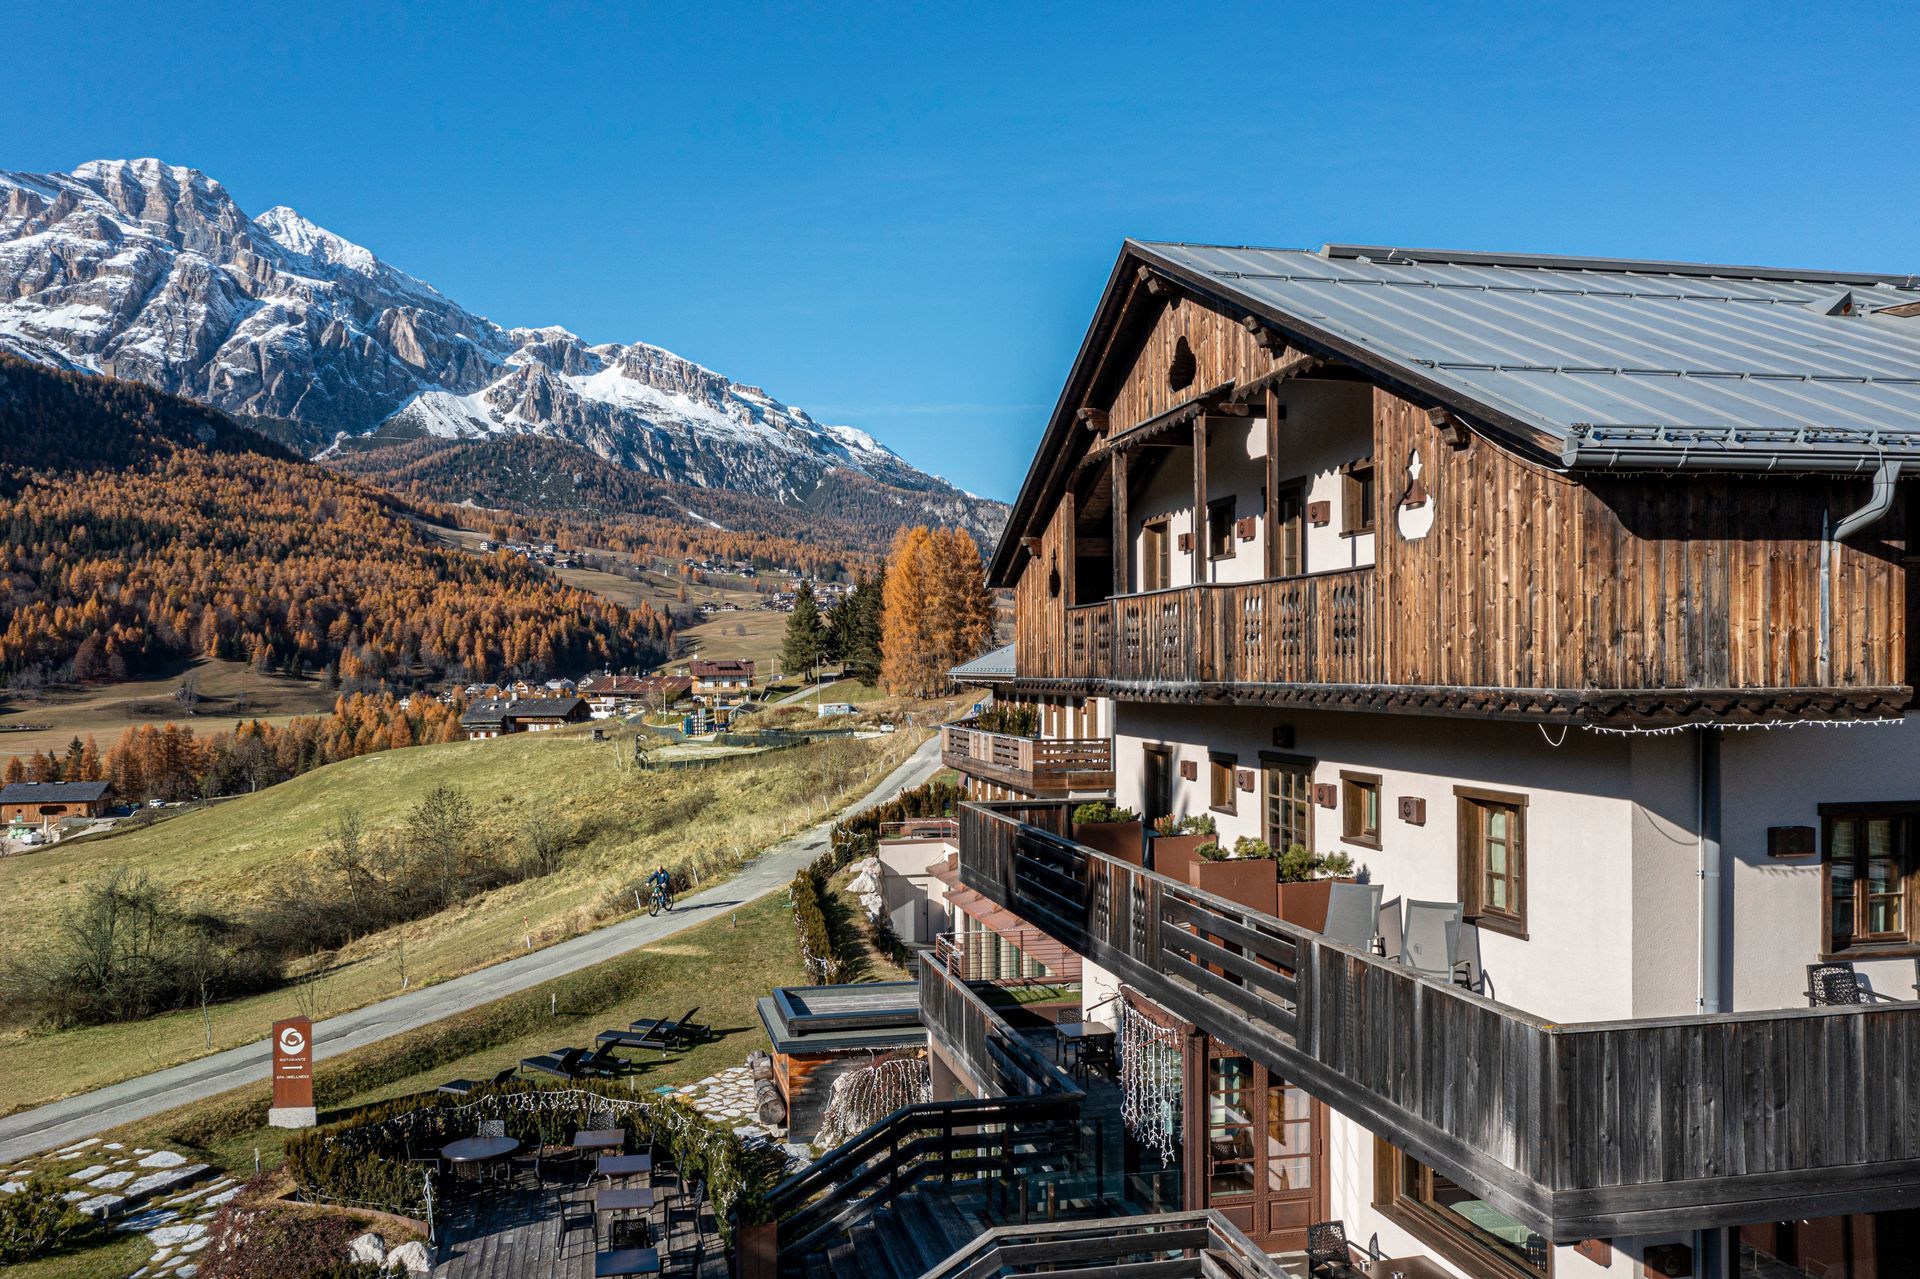 Offerta per gli ospiti che desiderano soggiornare nell’esclusivo Rosapetra SPA Resort di Cortina.